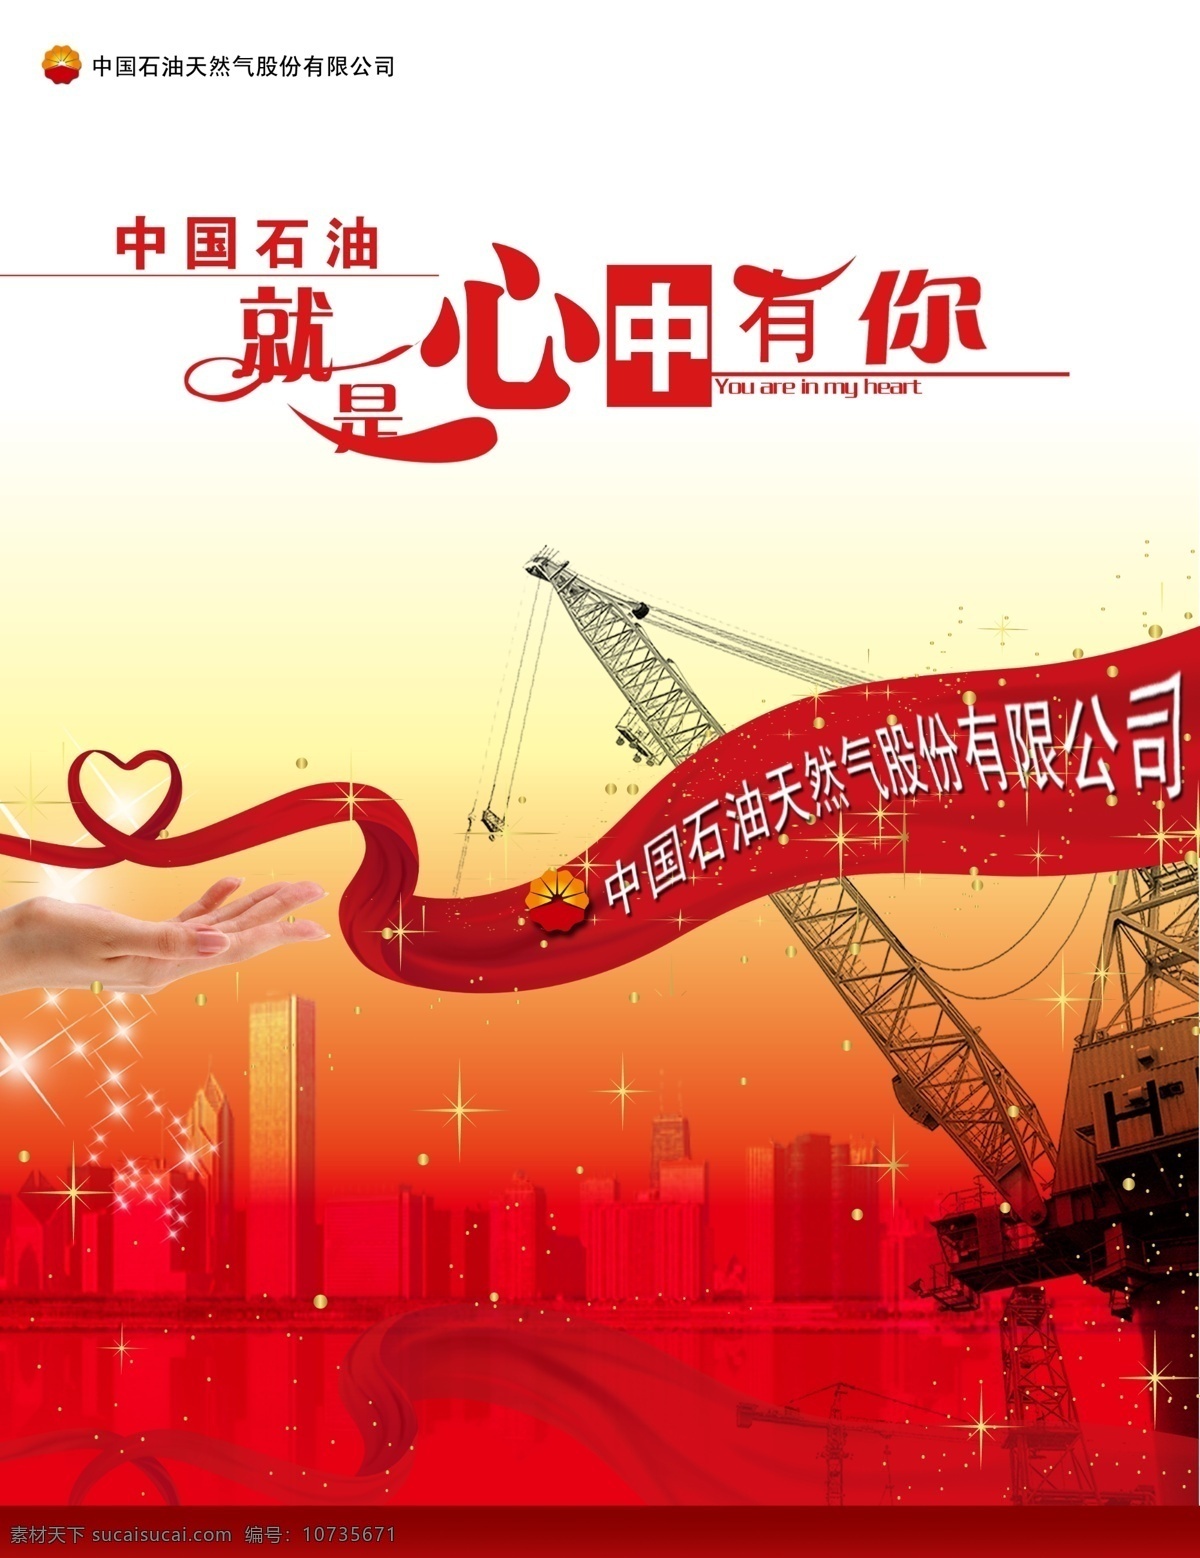 中国 石油 心中 中国石油 心中有你 中石油 勘探机 红心 手 楼体 广告设计模板 源文件库